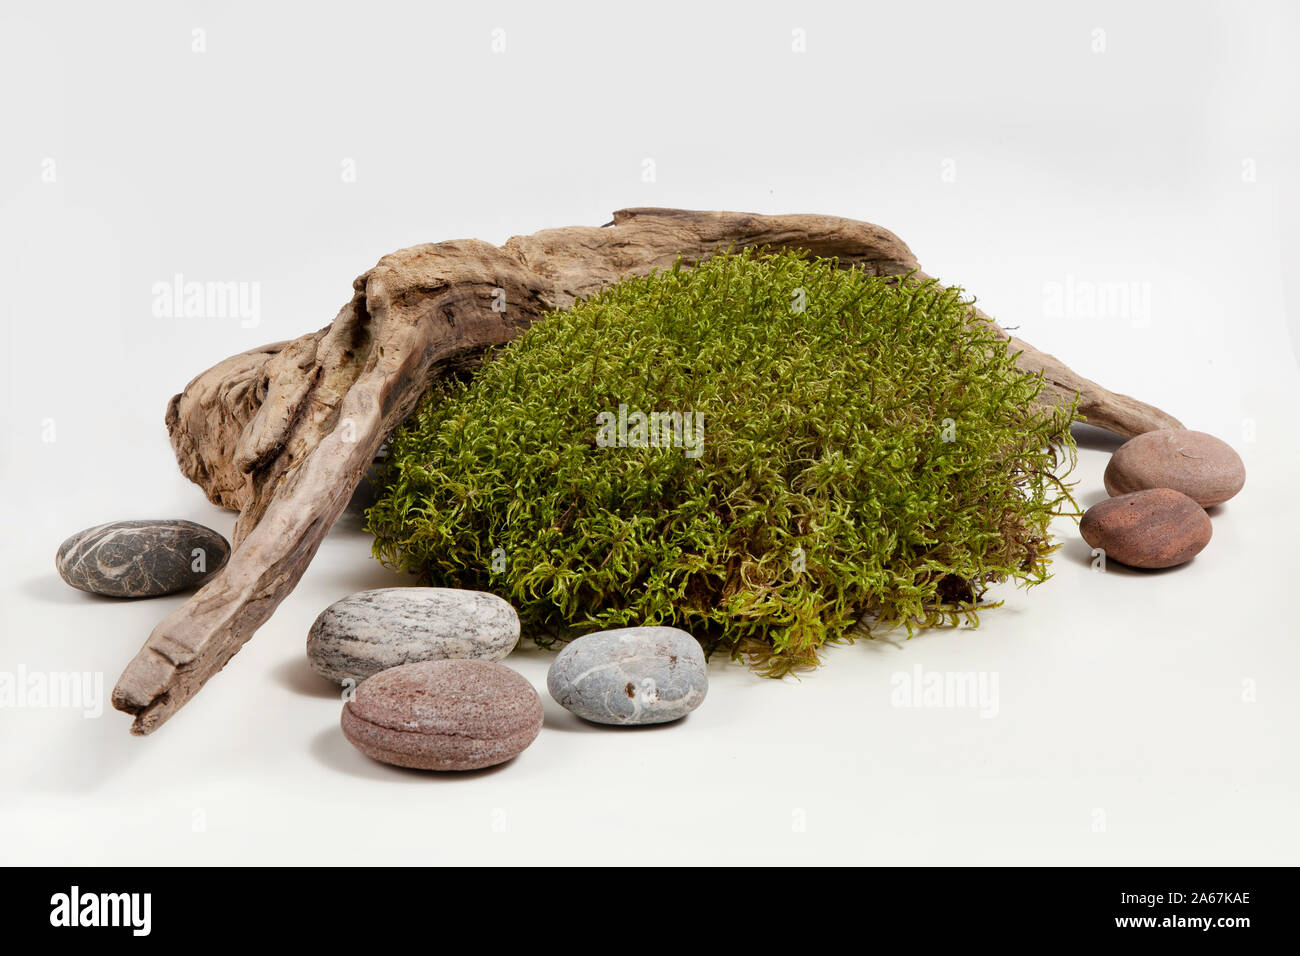 Composizione del pezzo di legno, MOSS e pietre isolate su uno sfondo bianco Foto Stock